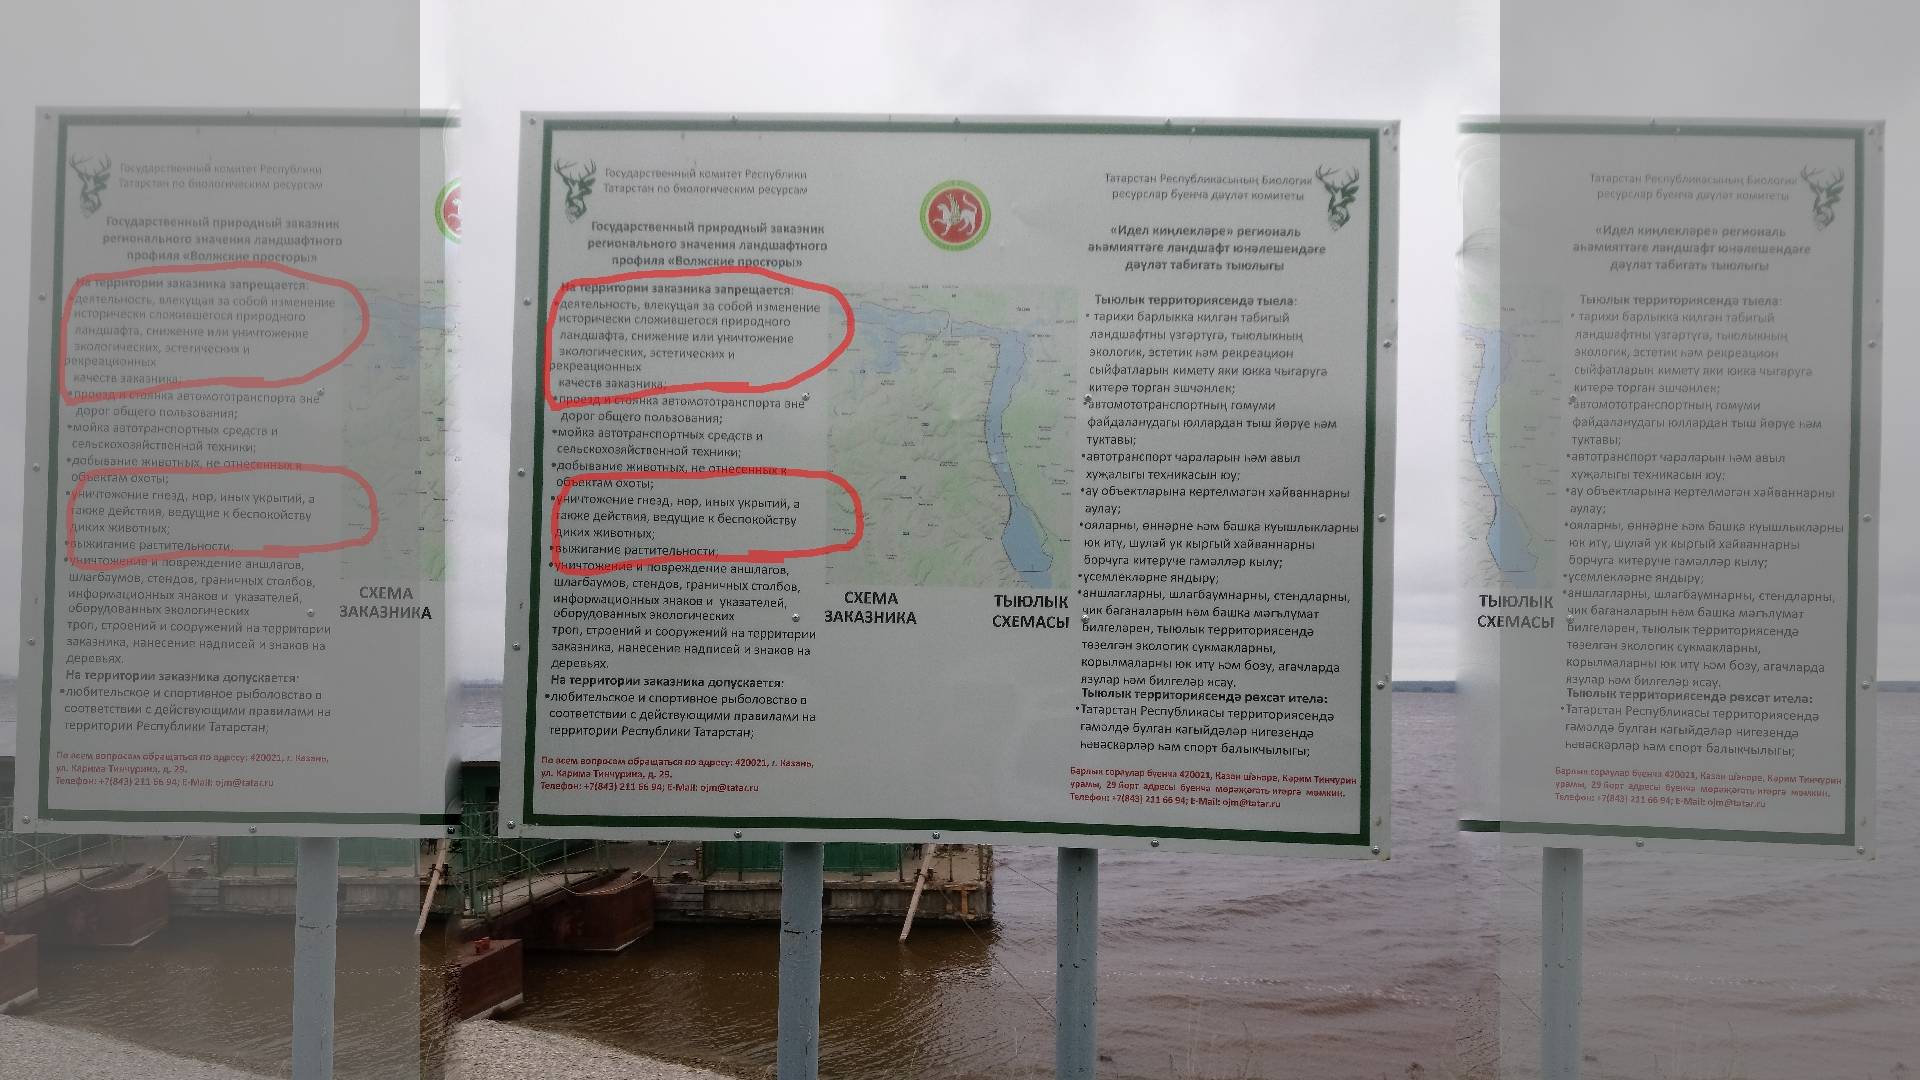 Застройка государственного природного заказника регионального значения в Татарстане